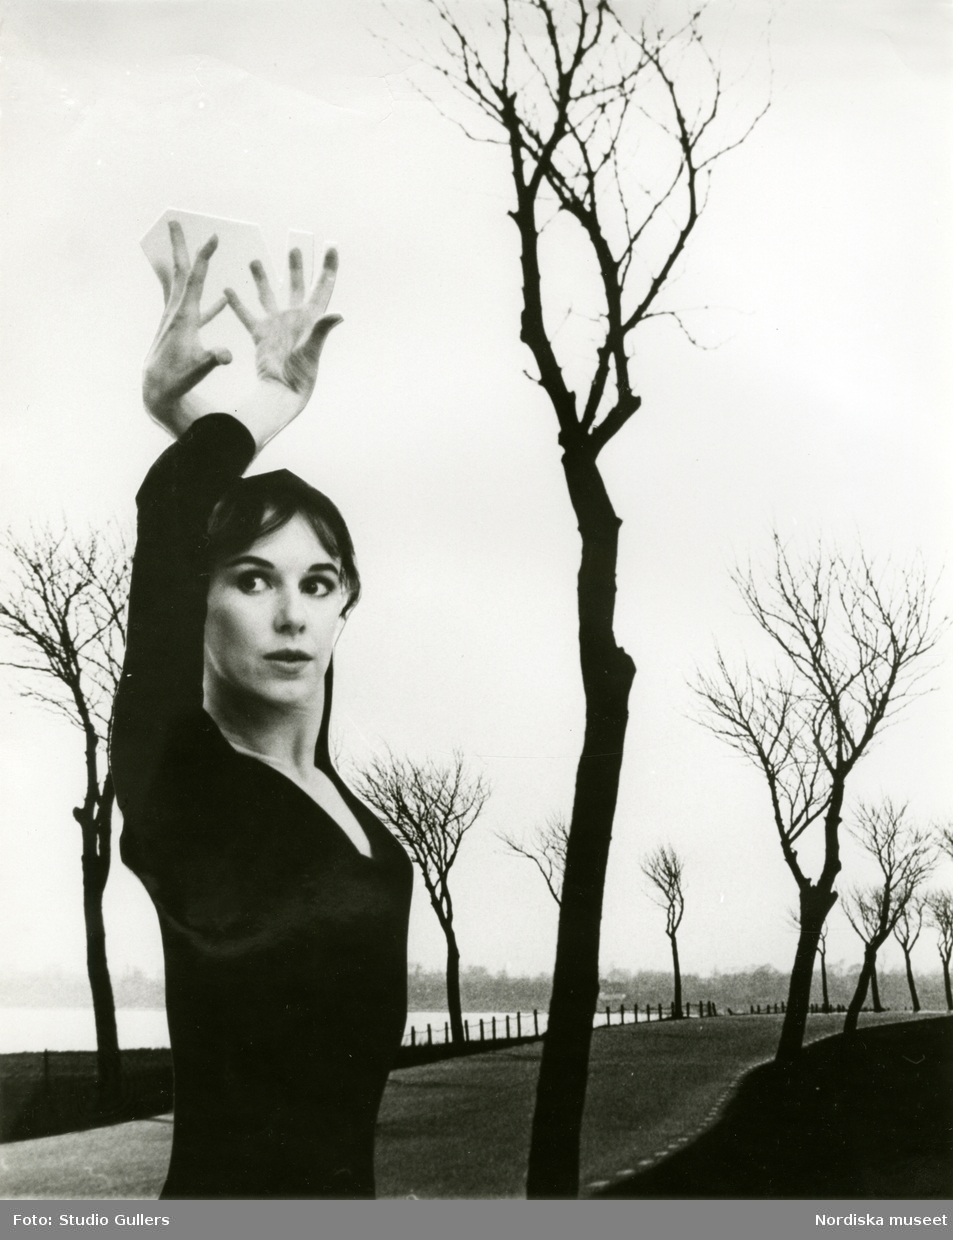 Kvinna poserar med uppsträckta armar framför en landskapsbild med väg och kala träd, troligen montage